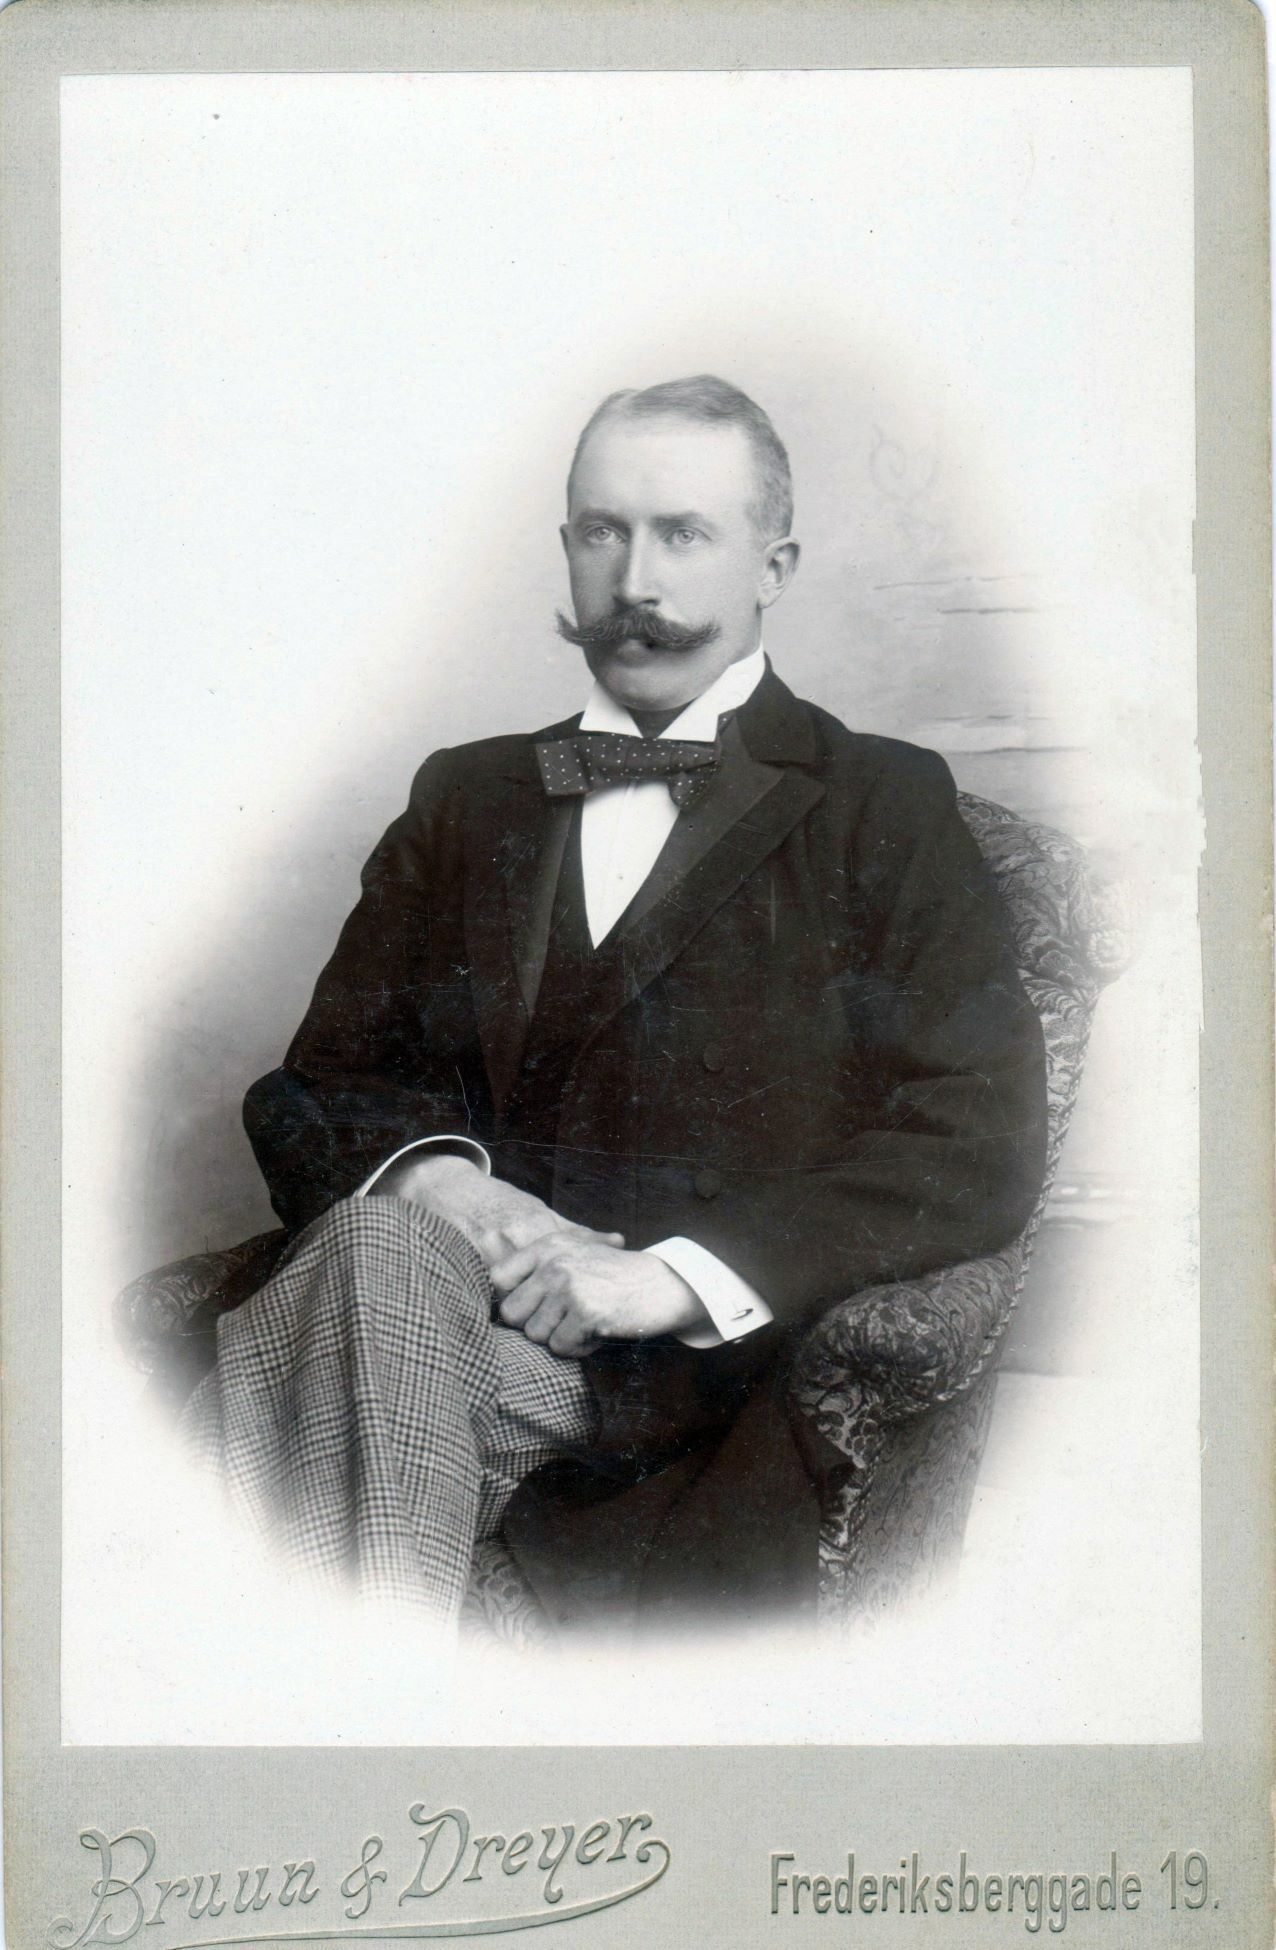 75.84 Oscar Borch f. 13.2.1866, søn af G.F Borch. Fotograf Bruun og Dreyer, Frederiksberggade 19, København. Datering ukendt.